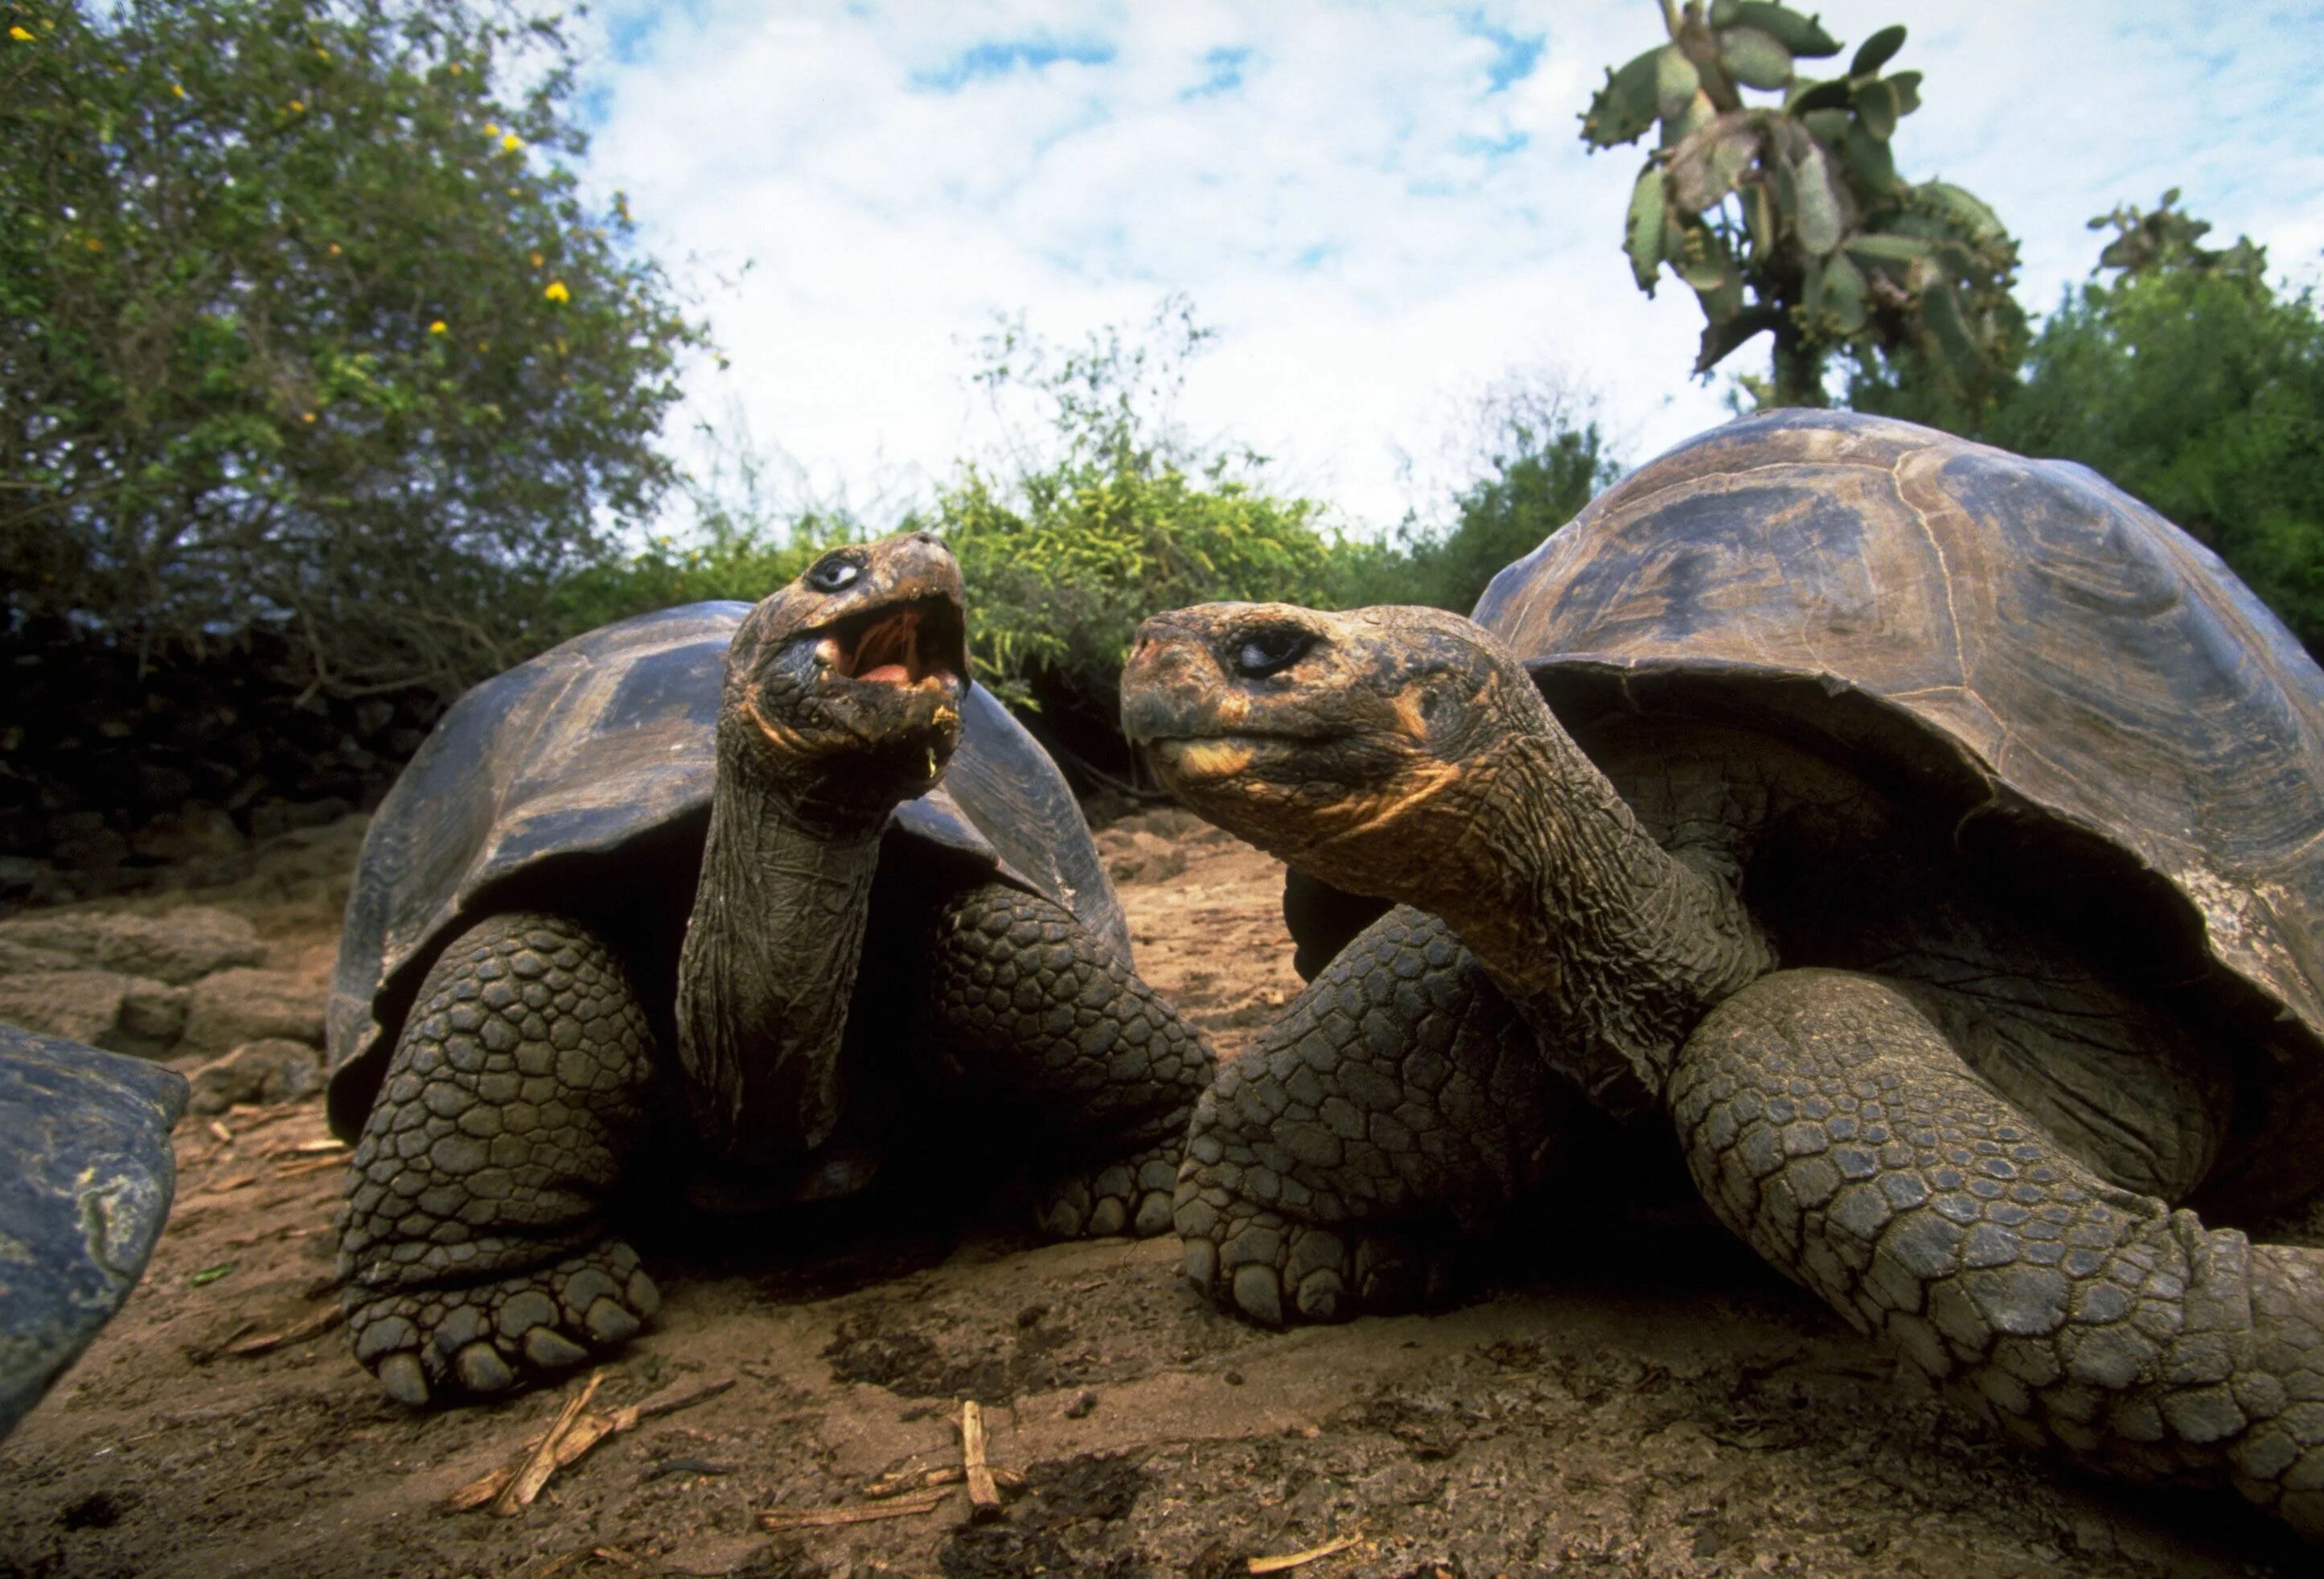 Слоновая черепаха относится к отряду чешуйчатых. Галапагосская черепаха. Дермохелис черепаха. Двухголовая черепаха. Пресмыкающиеся обитатели черепаха.